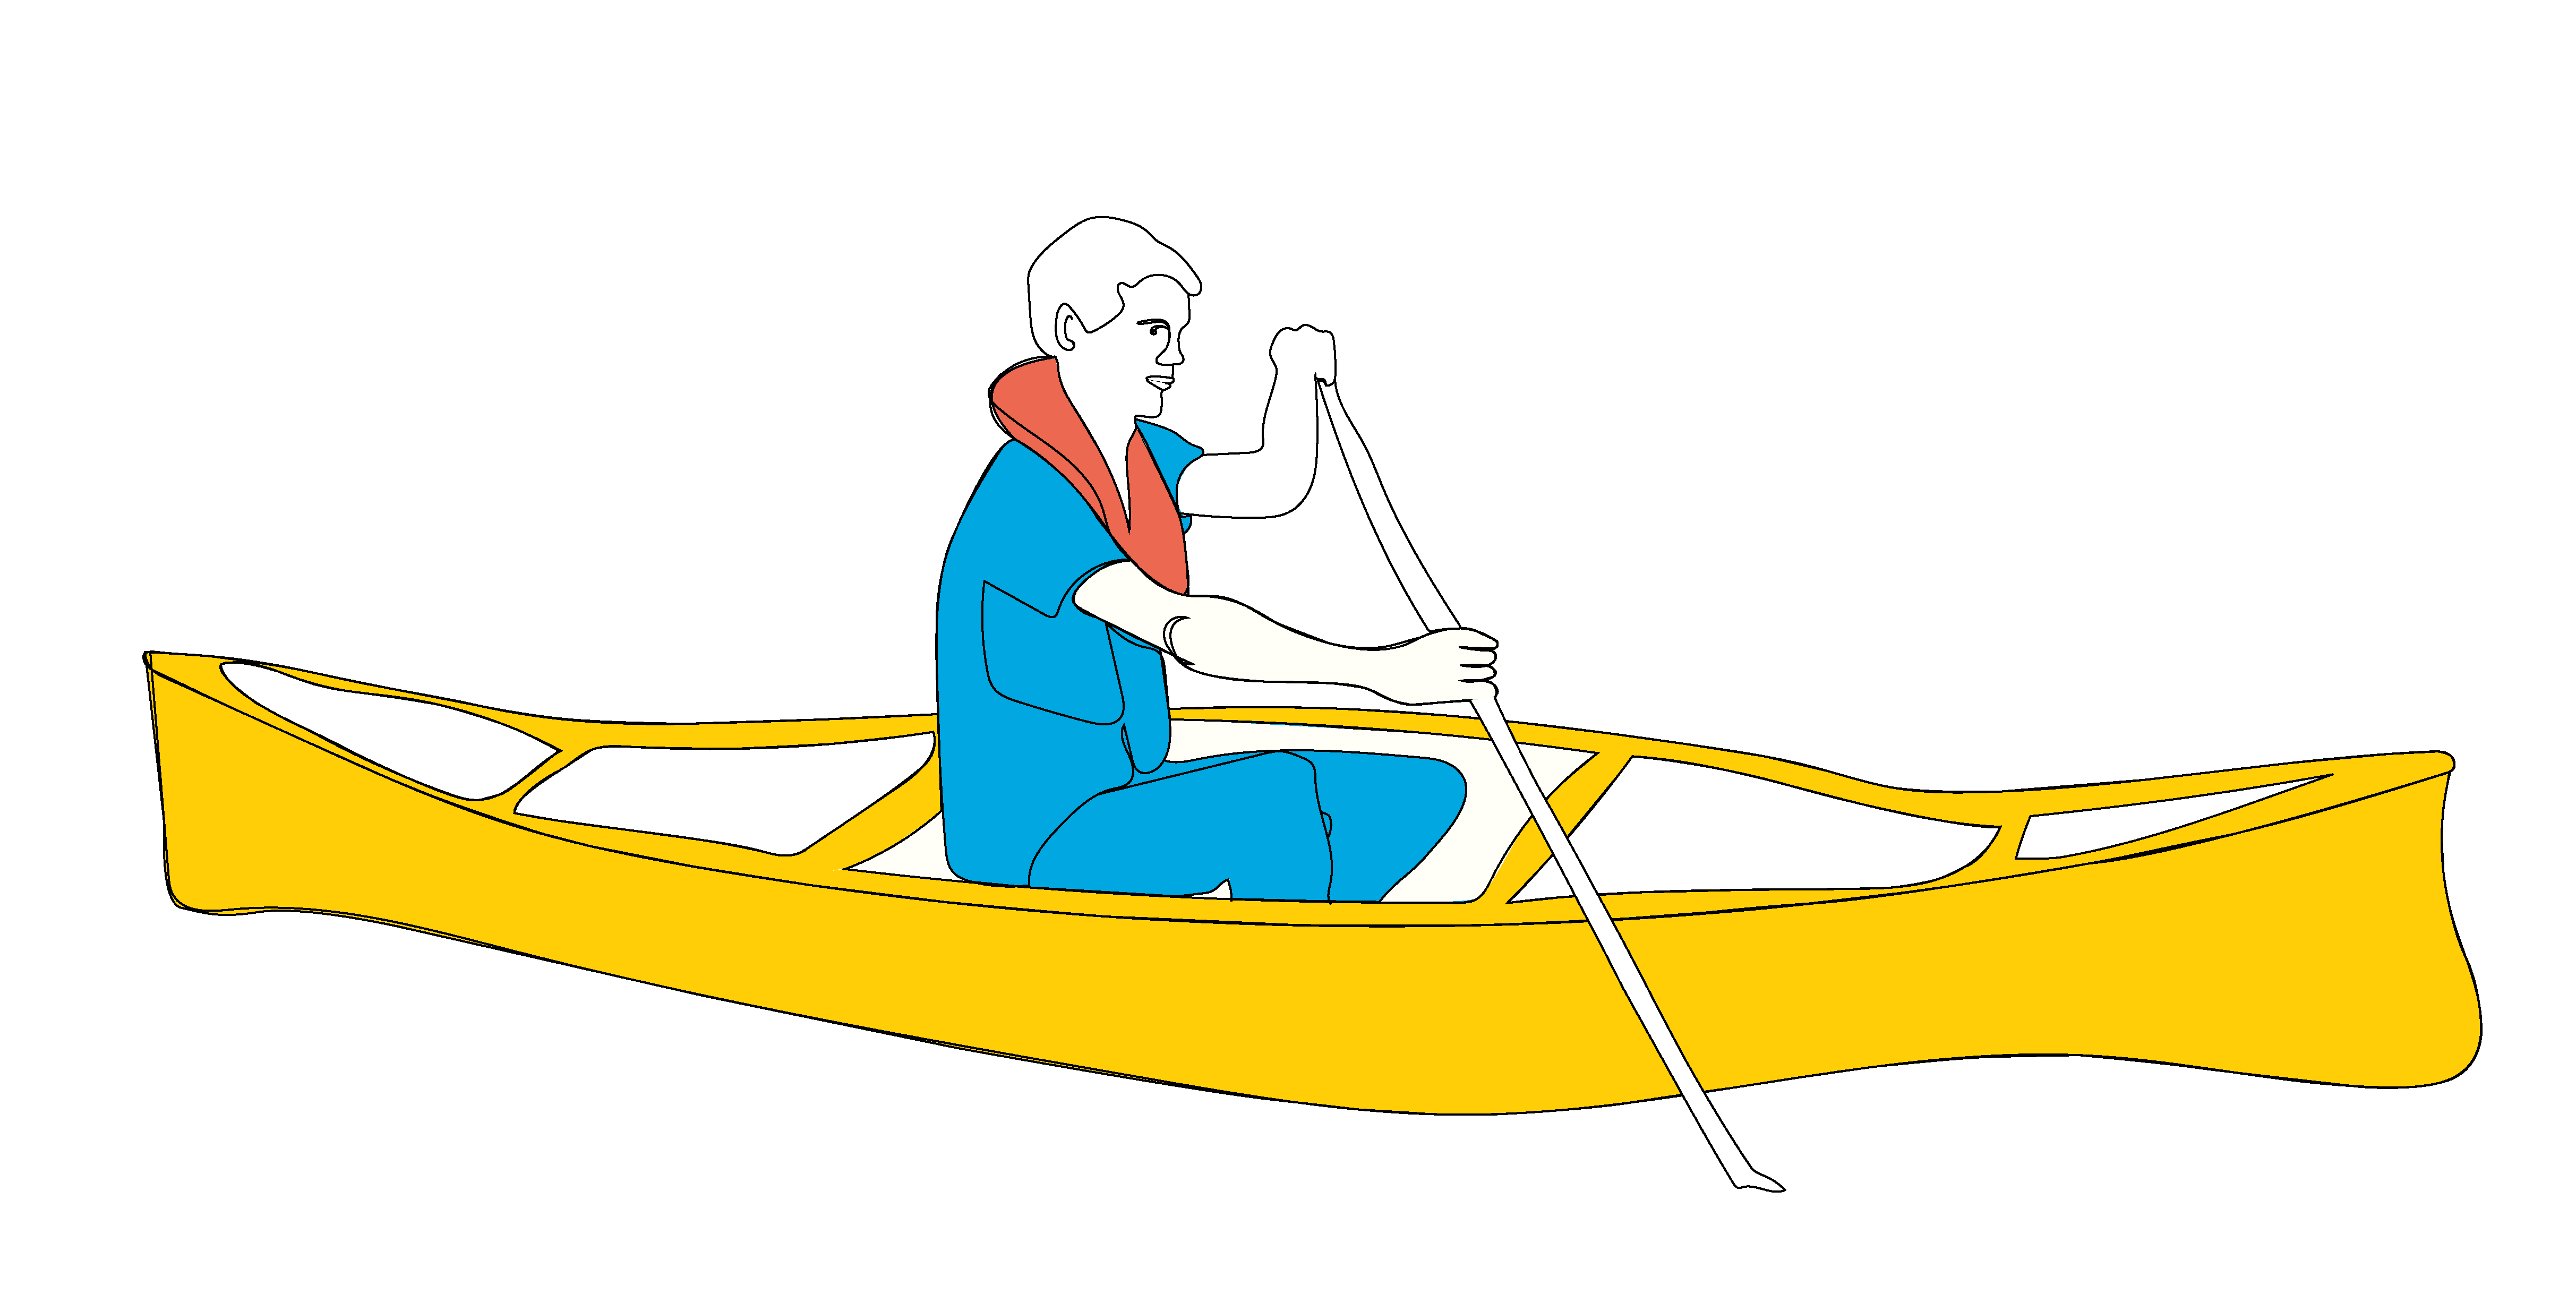 clipart boat canoe